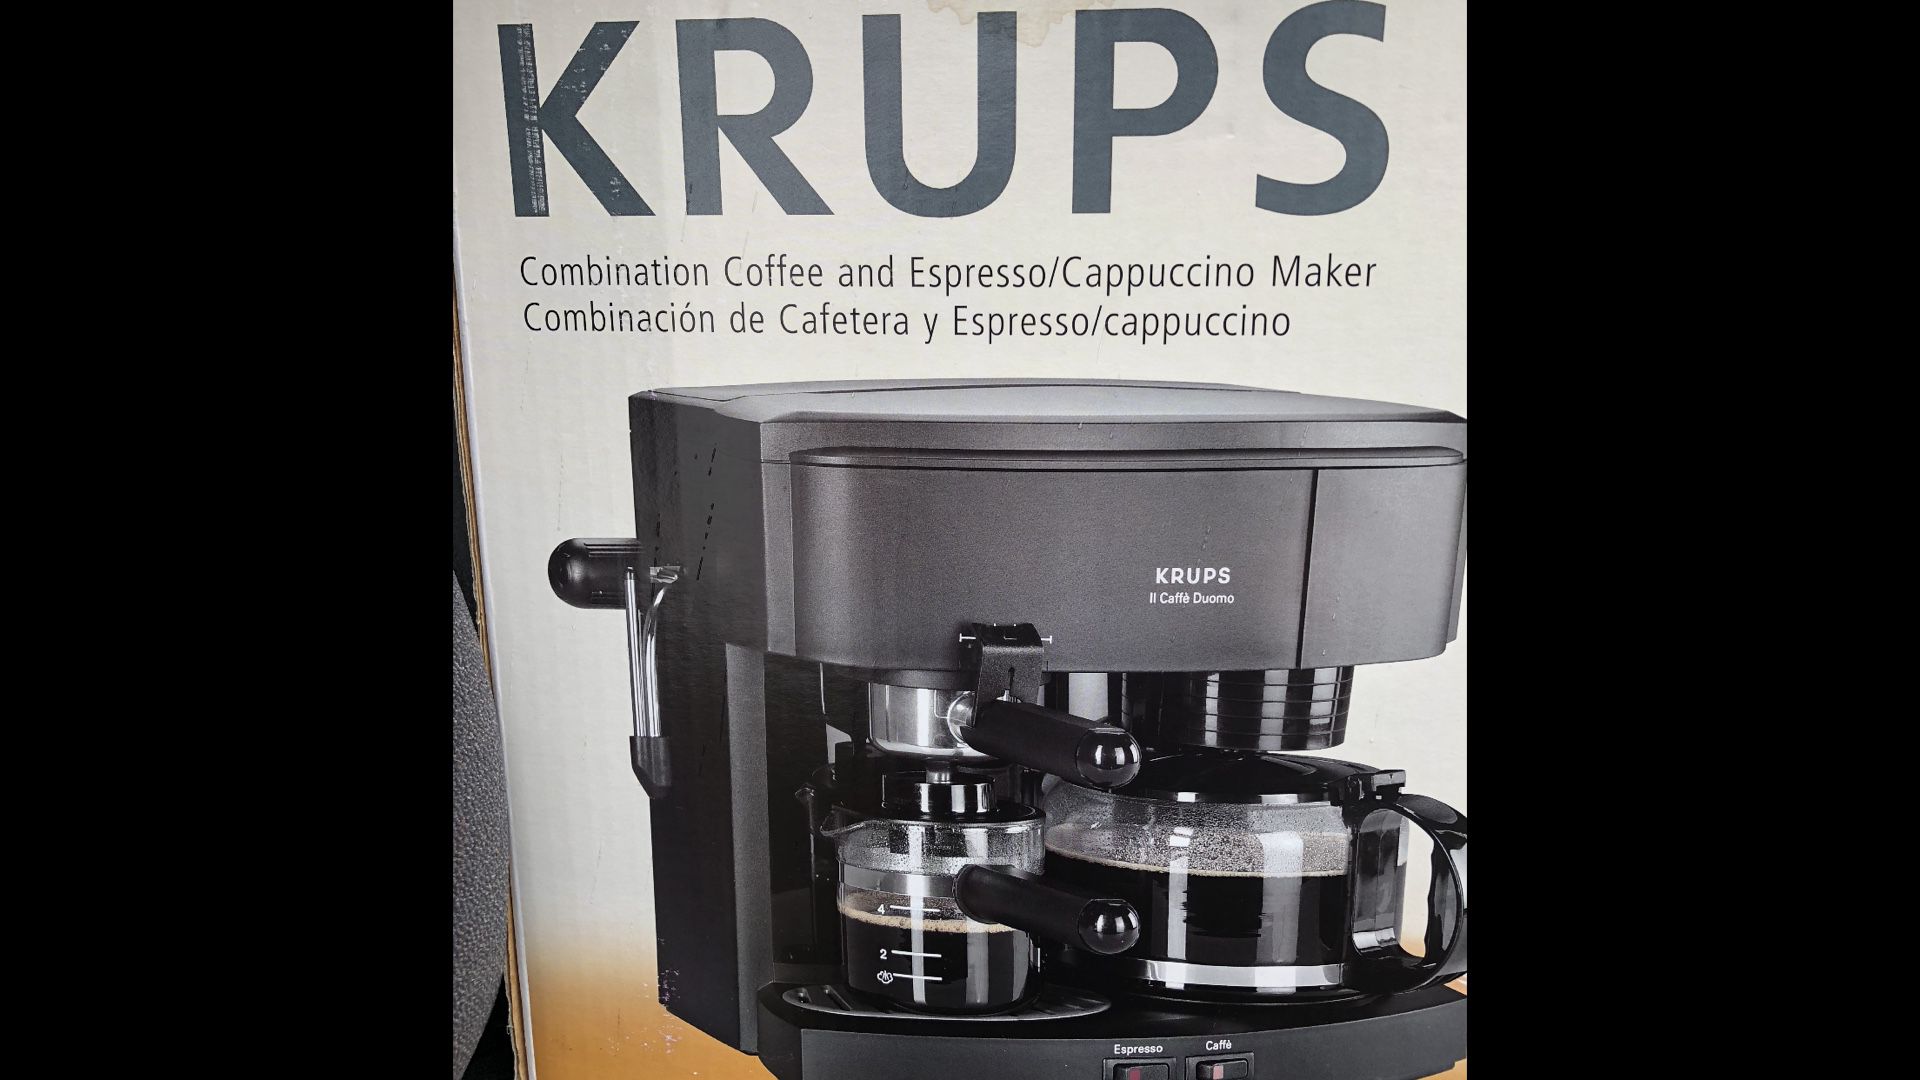 Coffee, espresso/cappuccino maker